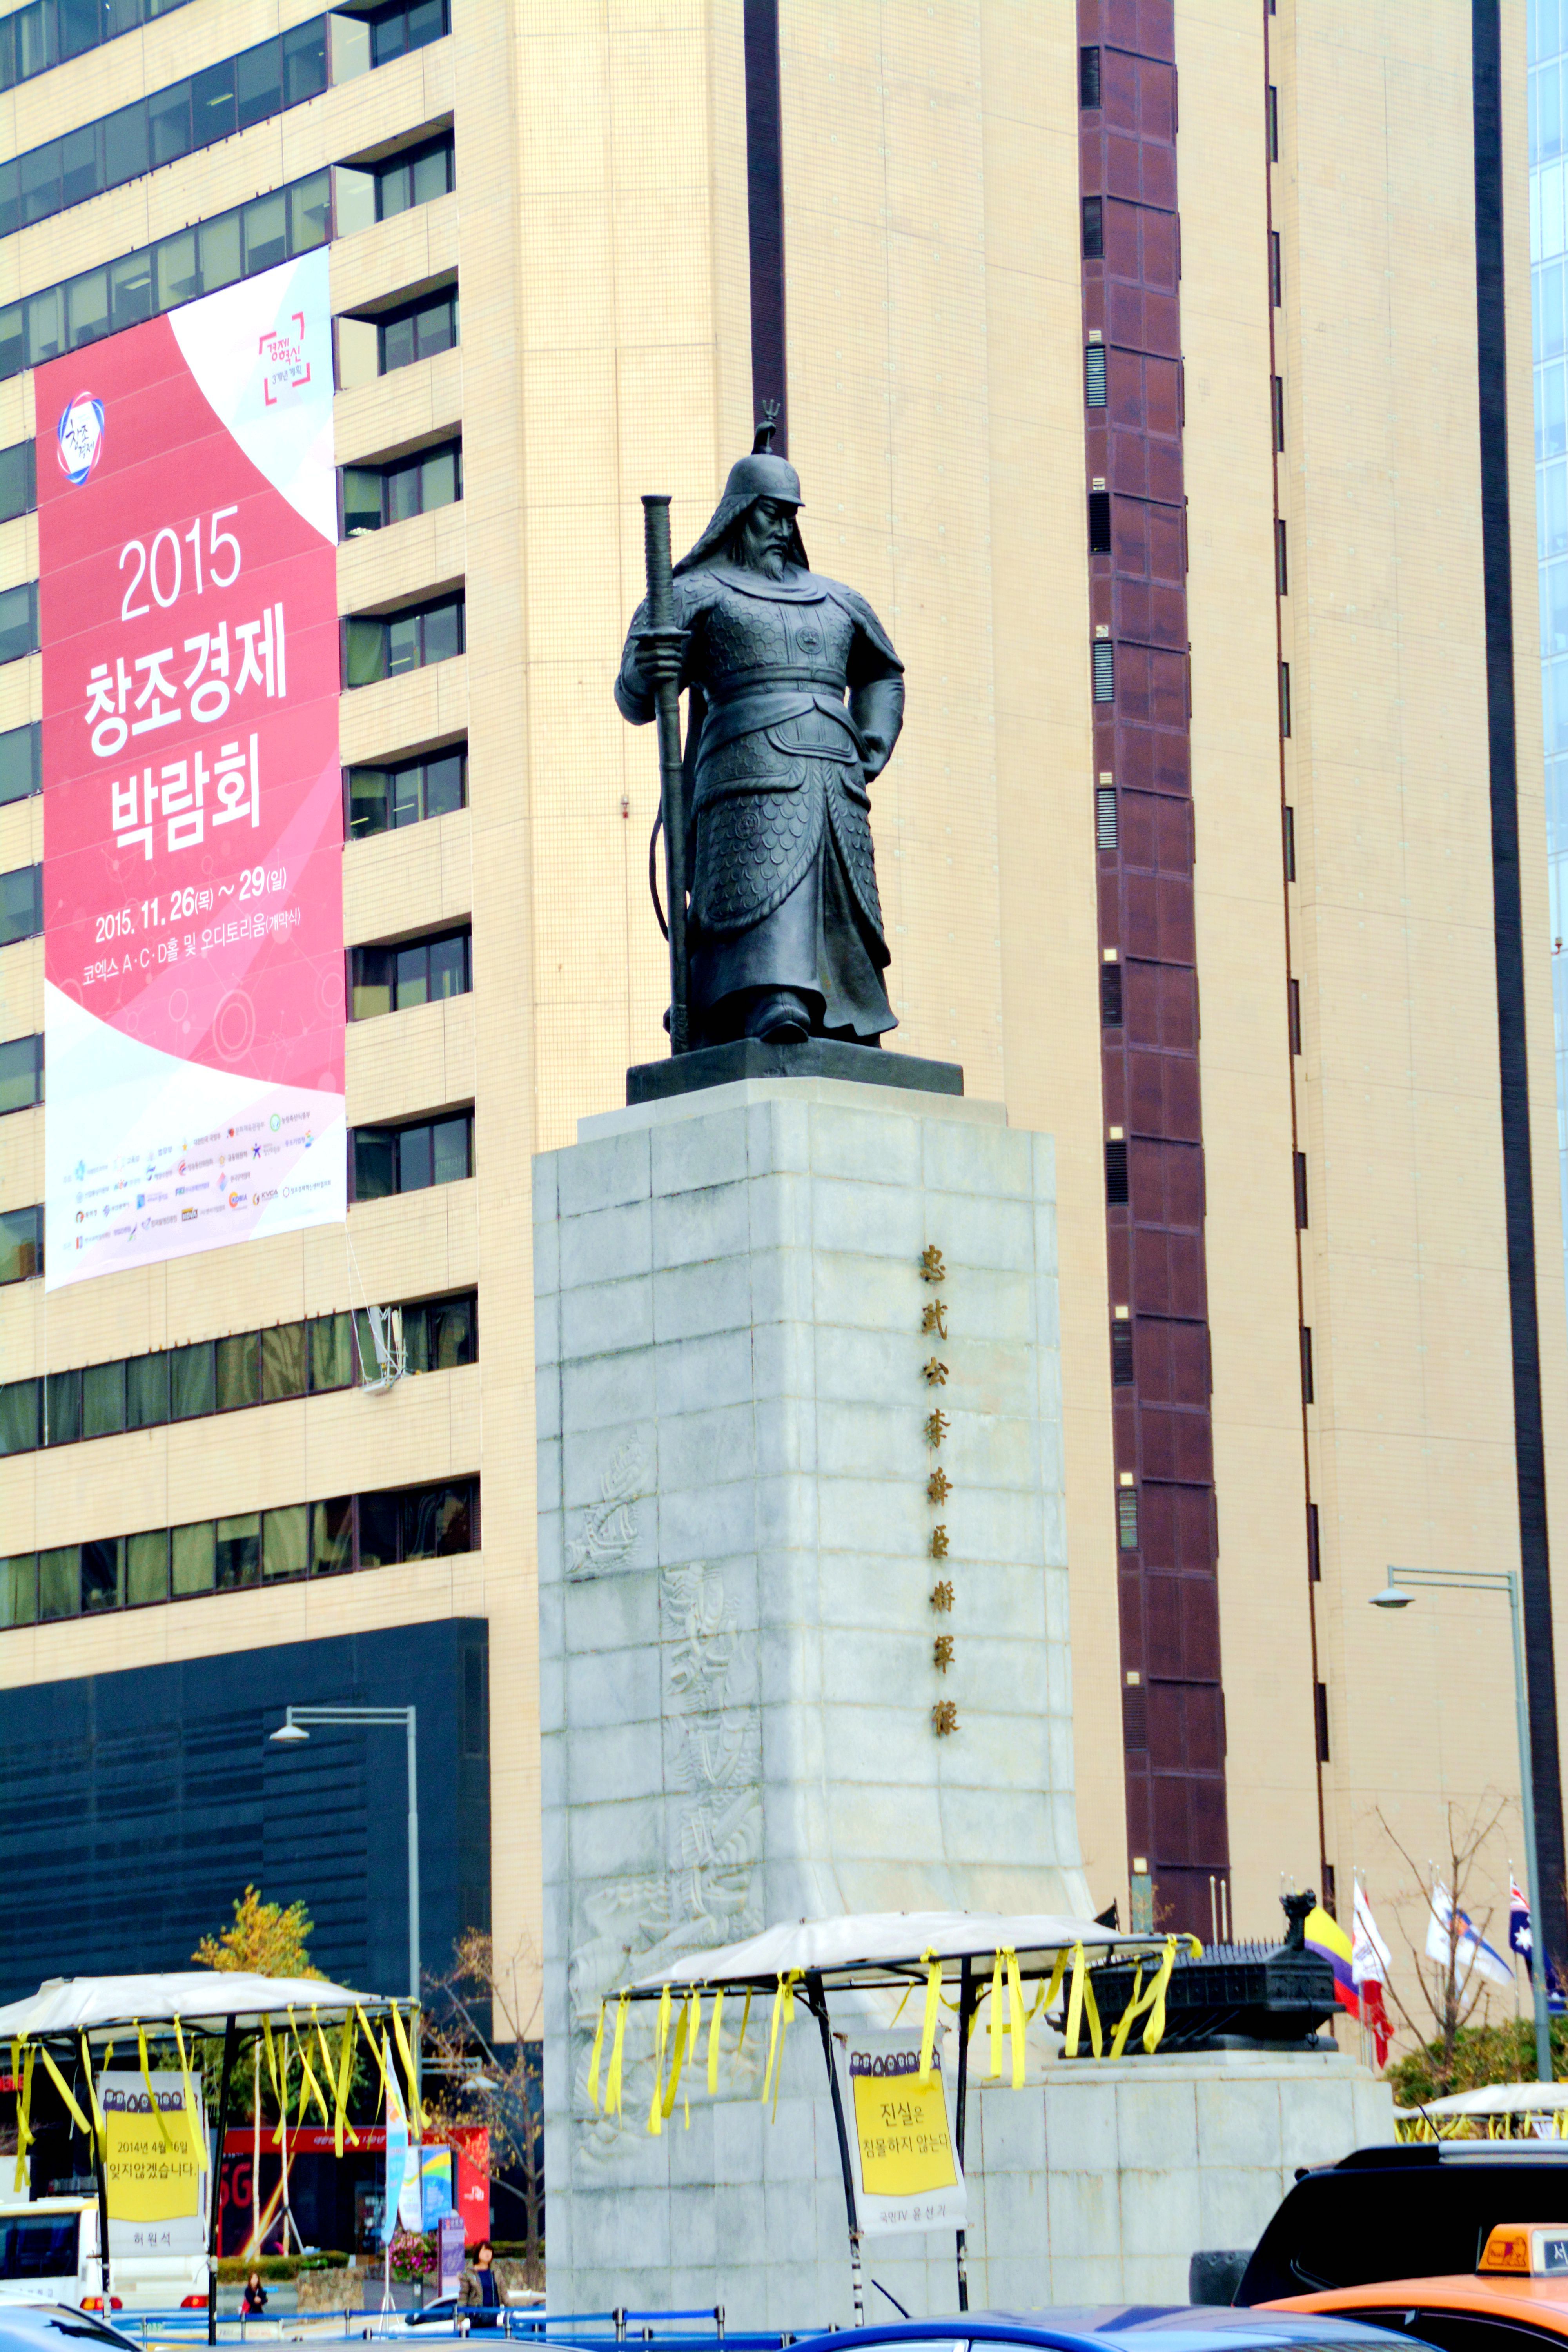 雕像景点,沿着獬豸广场蜿蜒的坡路一路走上来可看到李舜臣将军的铜像